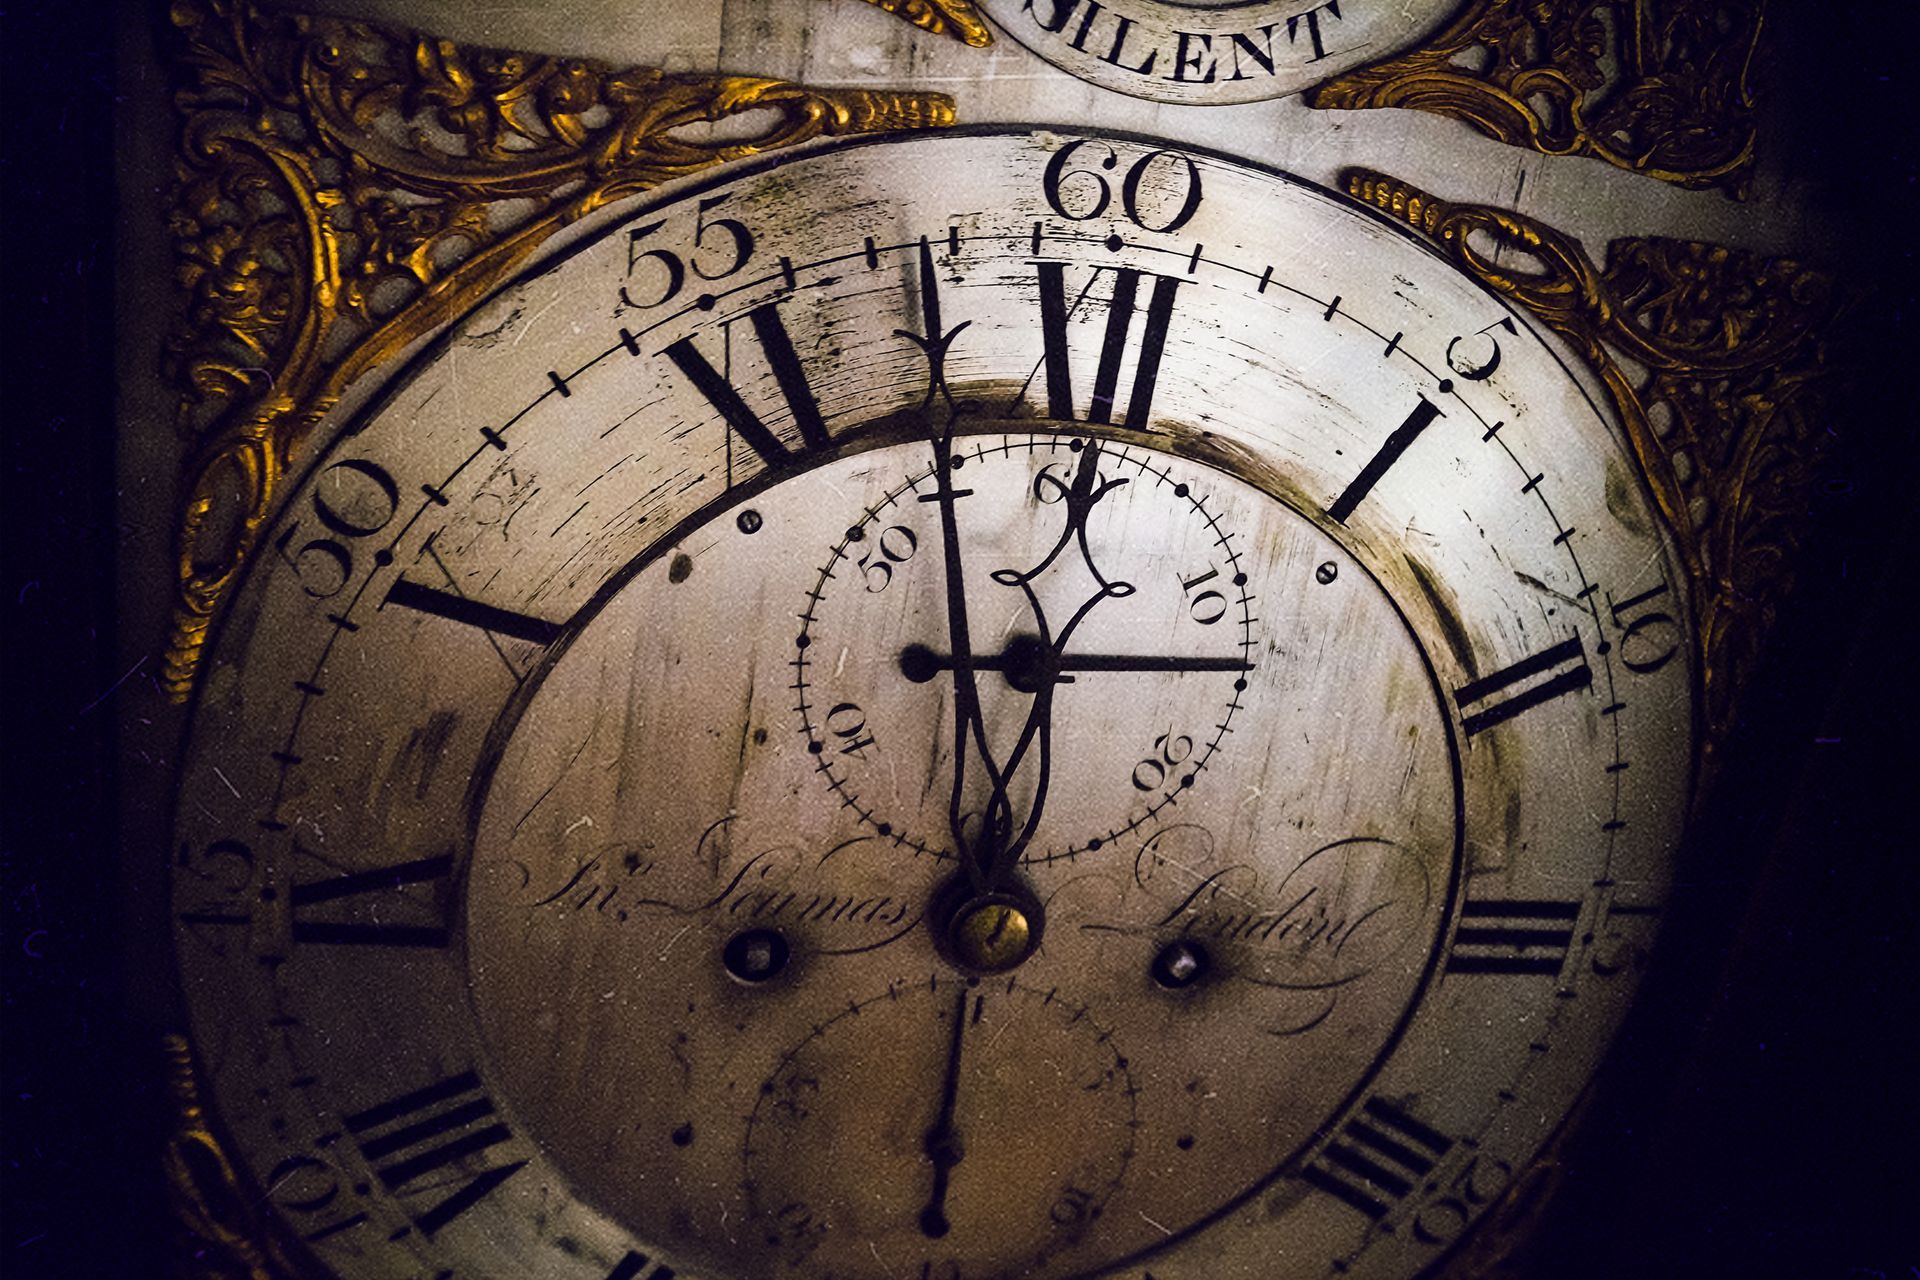 Antique Clocks | Mason, OH | Tic Toc Shop